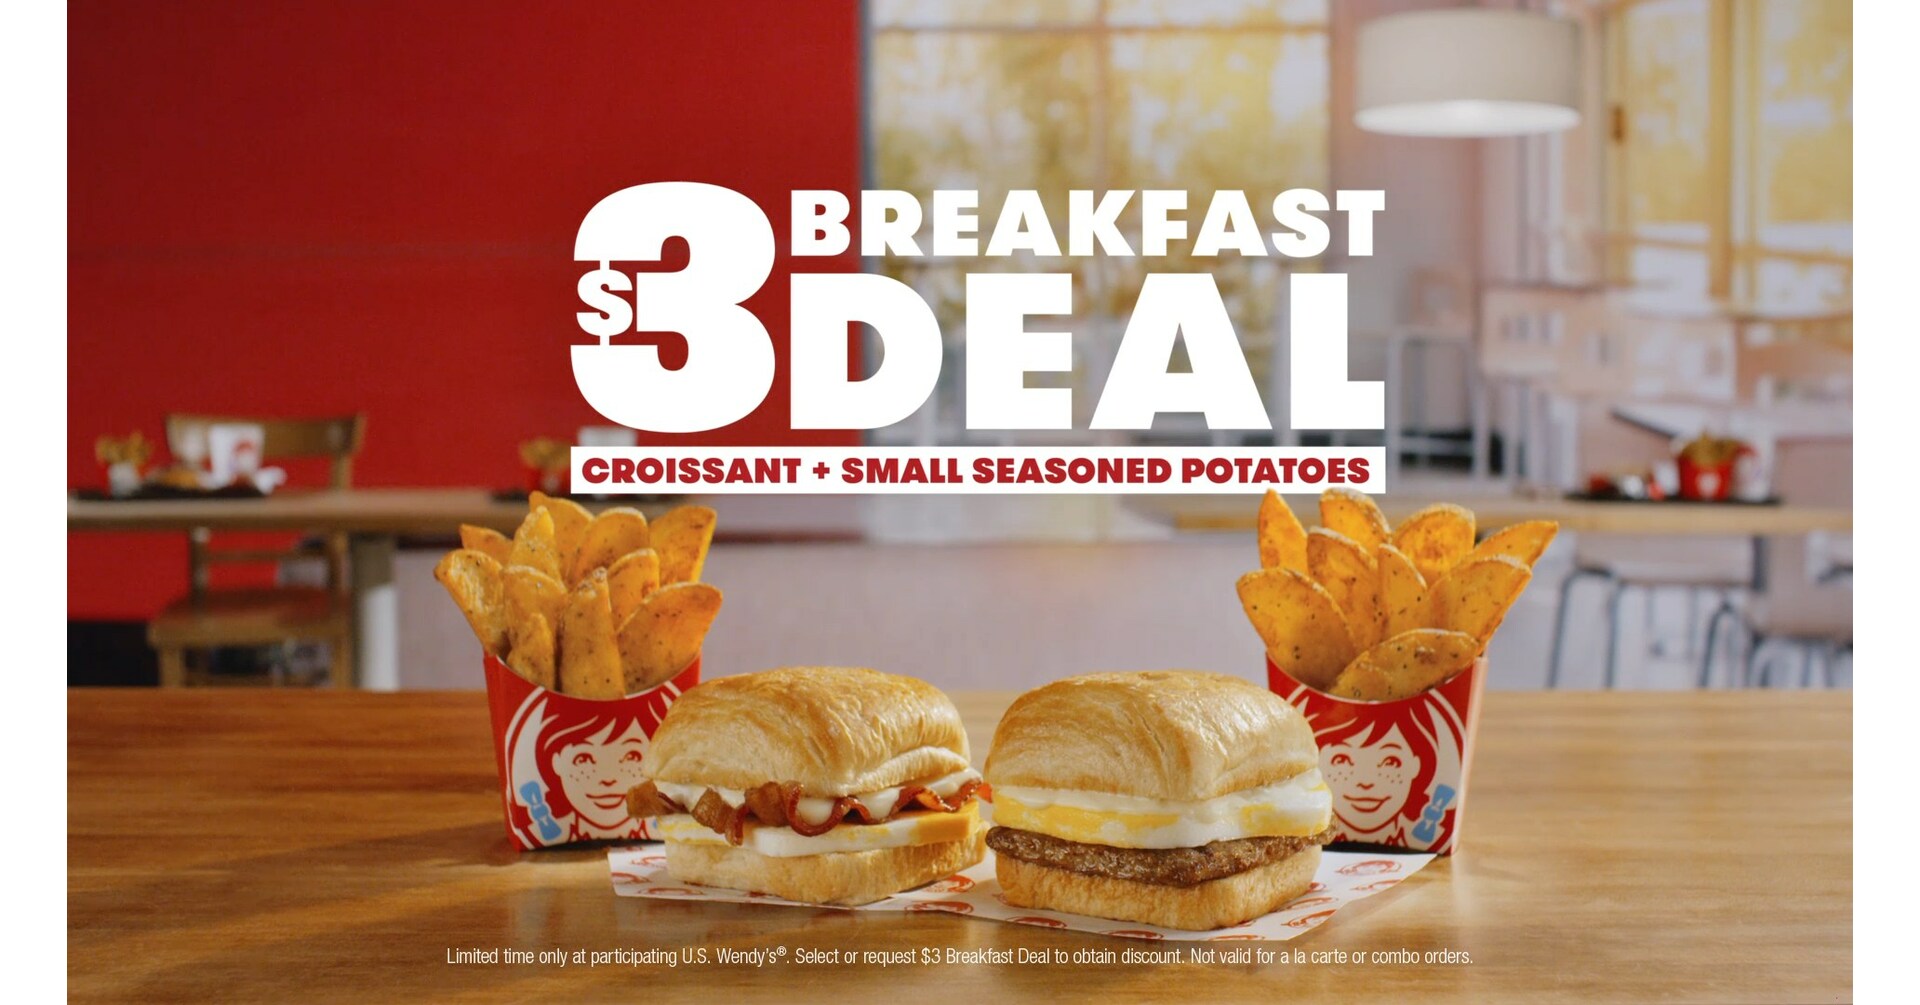 Wendy's FanFavorite 3 Breakfast Deal is Back!